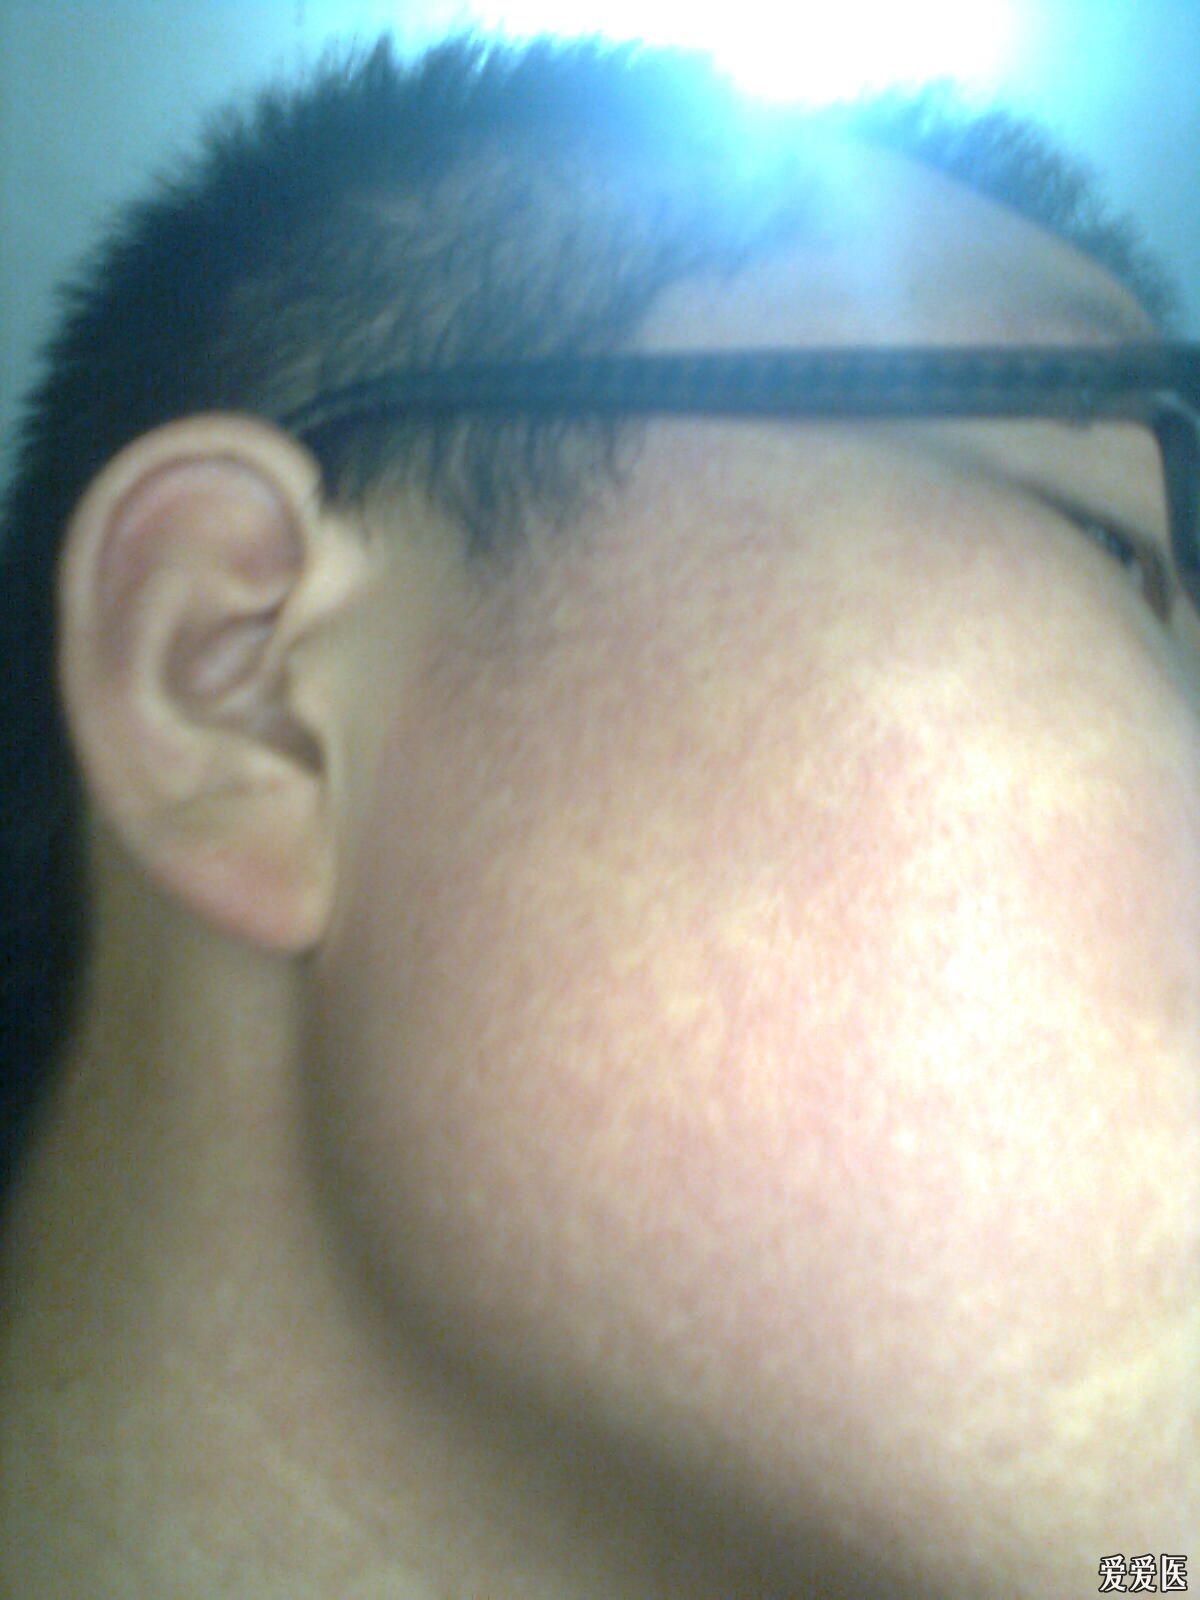 高手们我这是面颈部丘疹红斑黑变病还是红色毛发角化病啊激光能治好吗